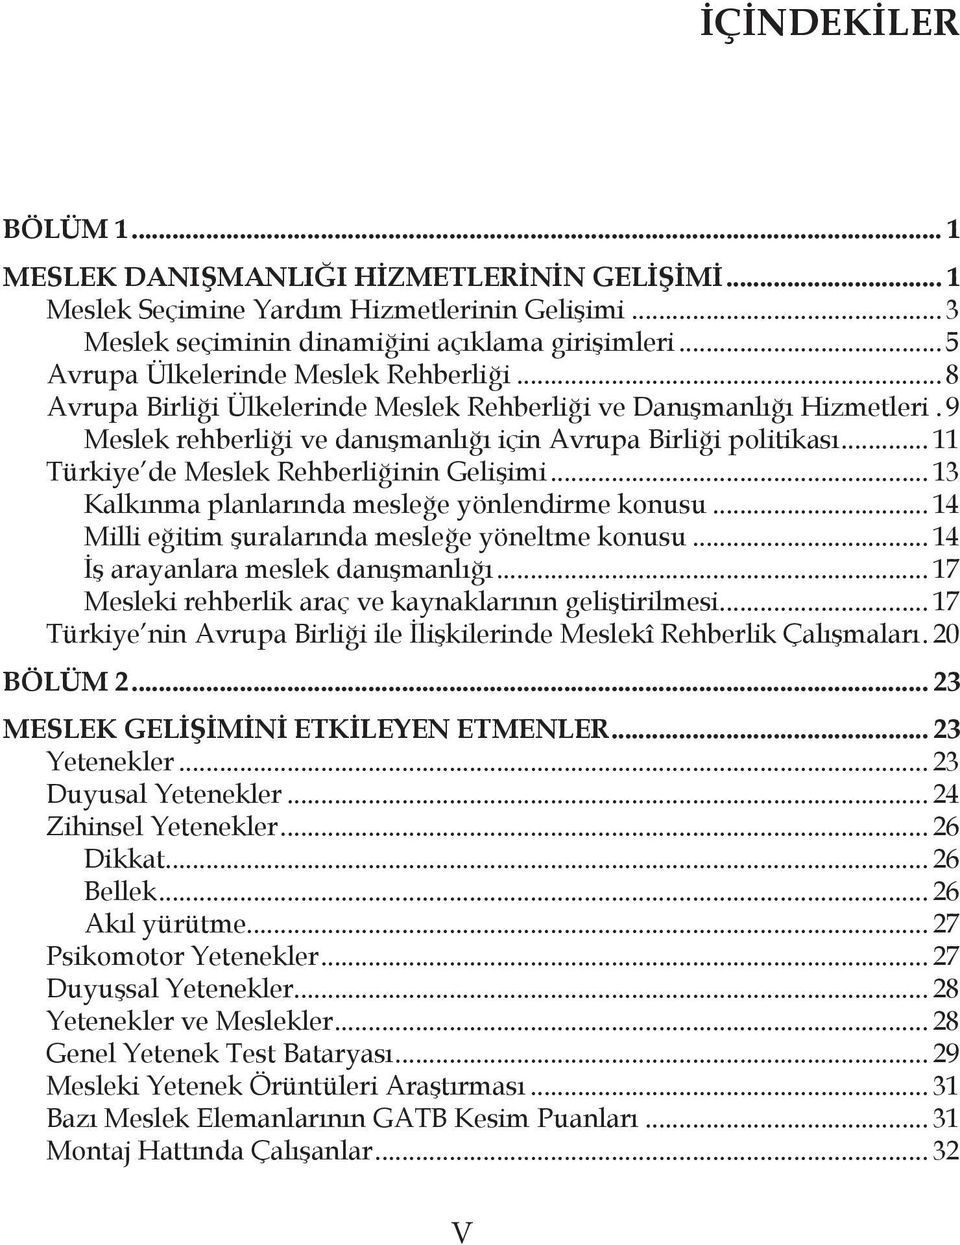 .. 11 Türkiye de Meslek Rehberliğinin Gelişimi... 13 Kalkınma planlarında mesleğe yönlendirme konusu... 14 Milli eğitim şuralarında mesleğe yöneltme konusu... 14 İş arayanlara meslek danışmanlığı.